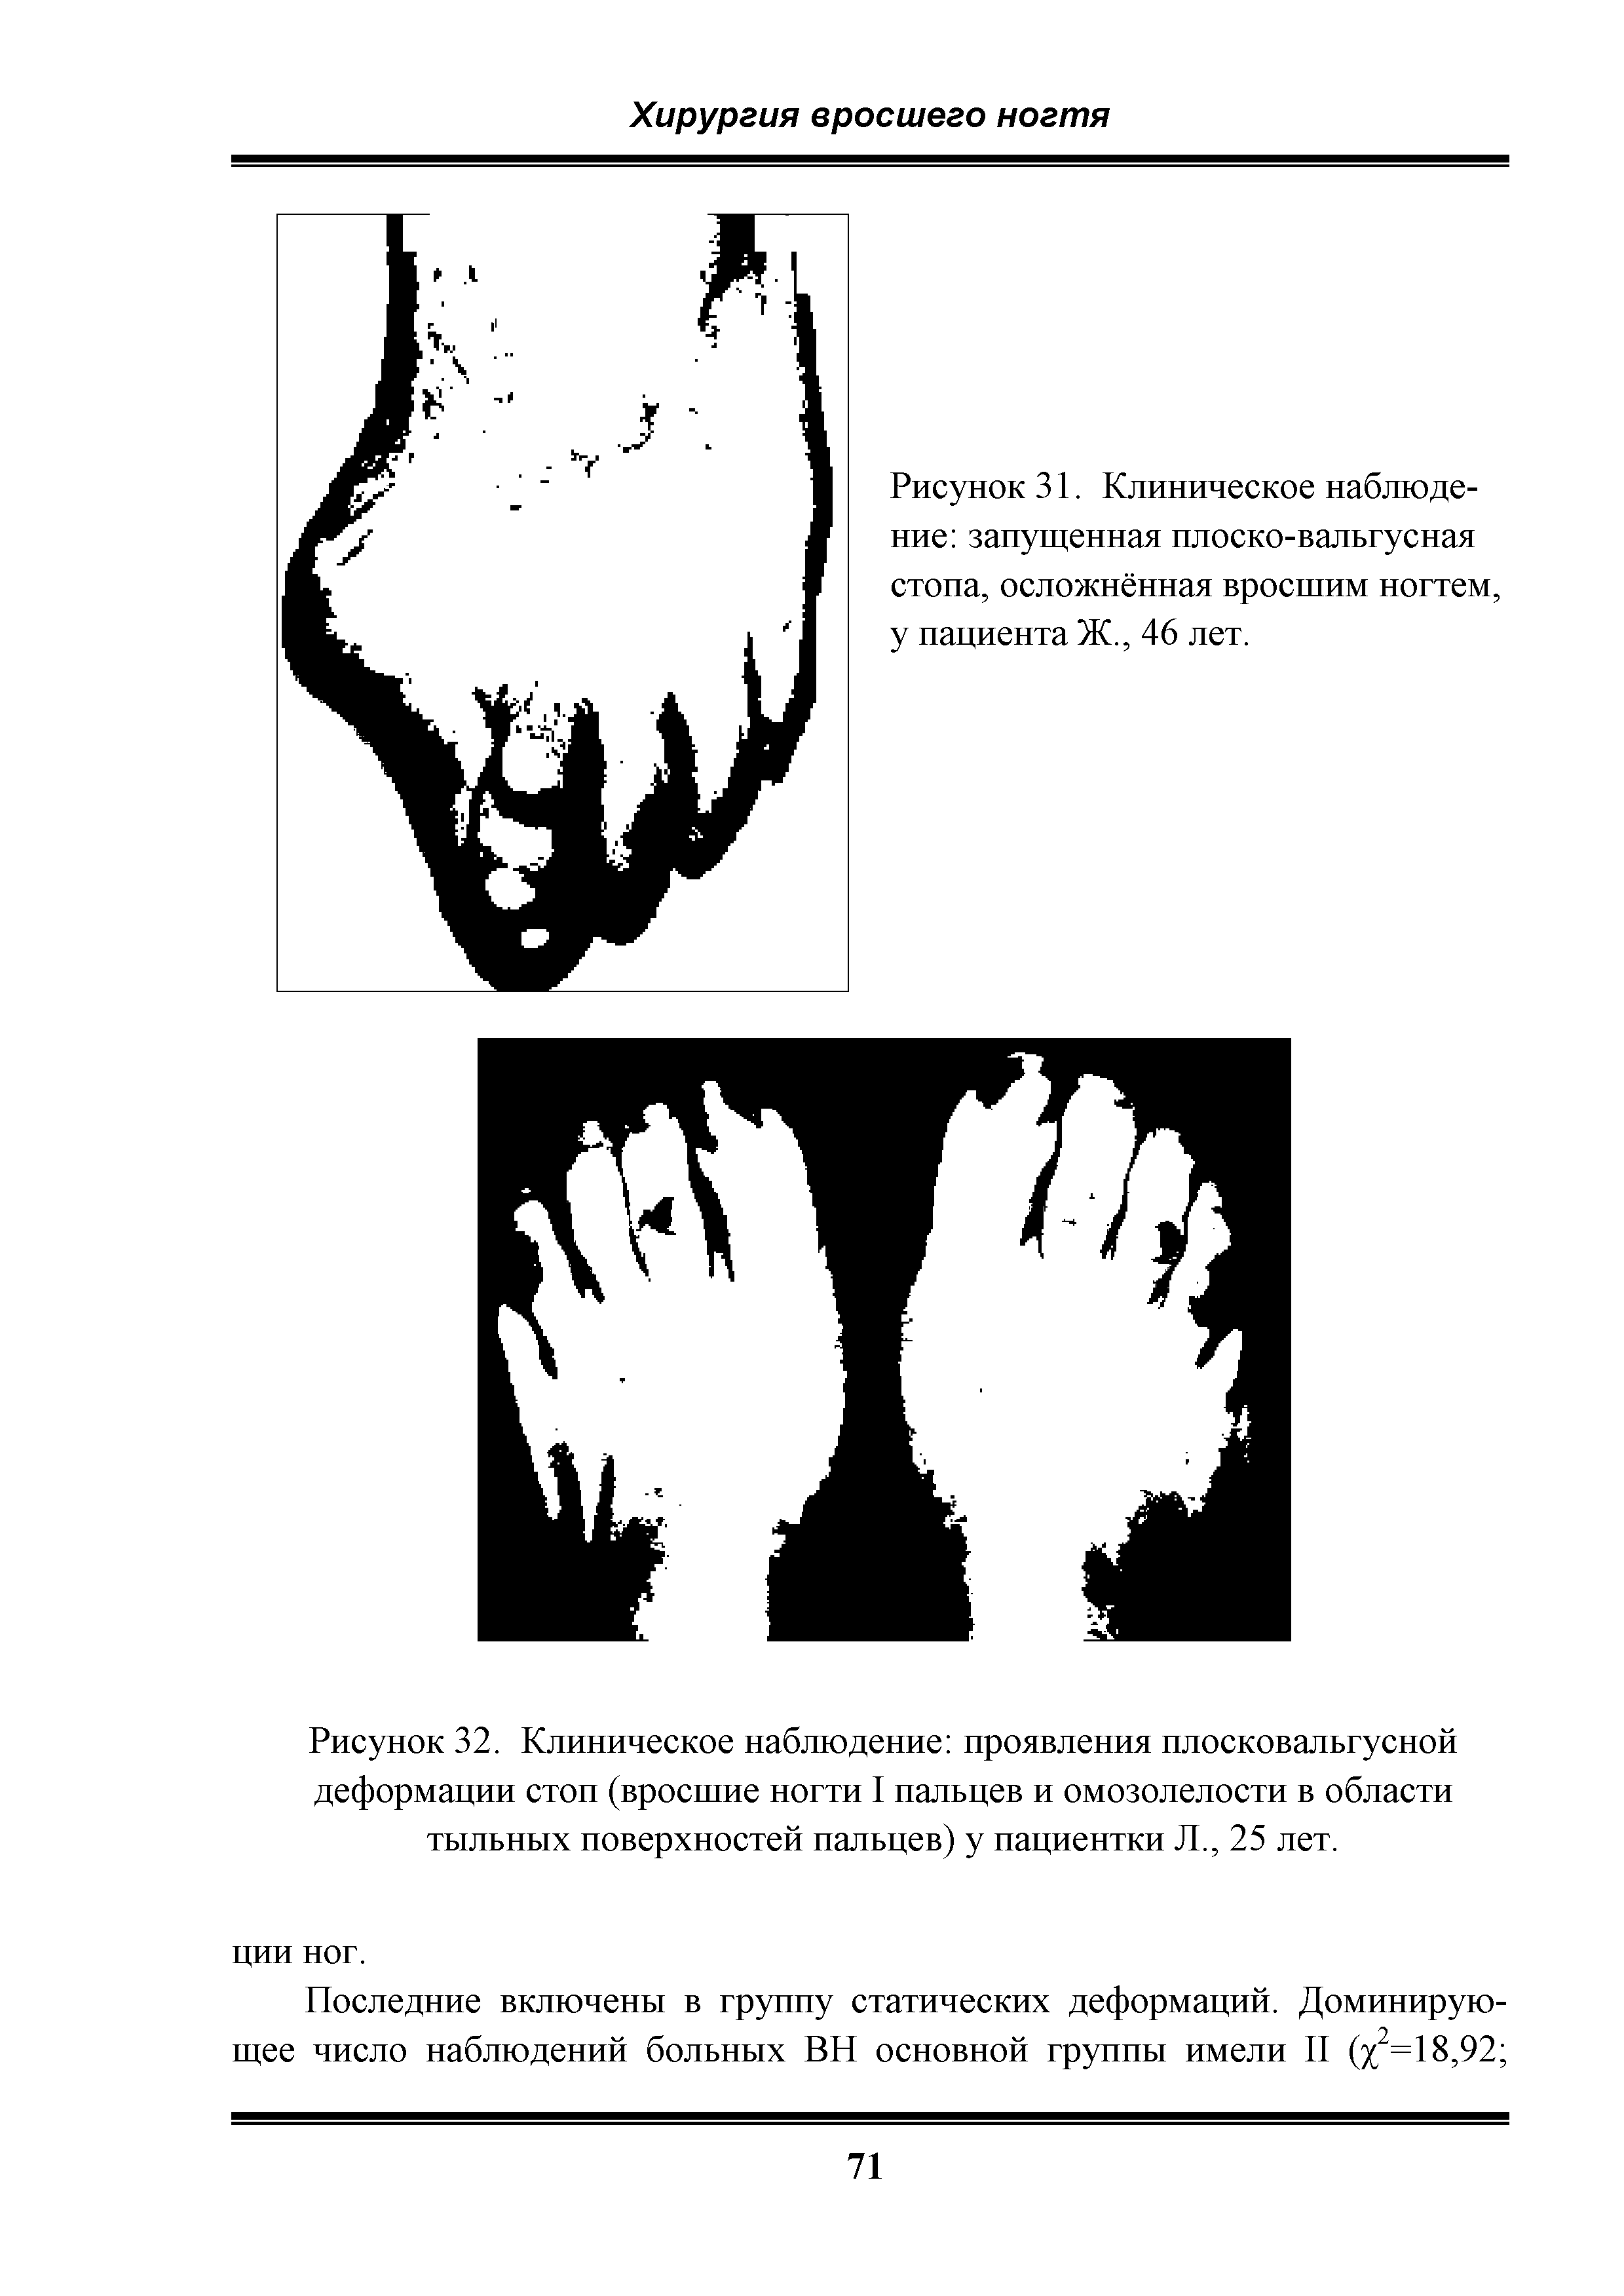 Рисунок 32. Клиническое наблюдение проявления плосковальгусной деформации стоп (вросшие ногти I пальцев и омозолелости в области тыльных поверхностей пальцев) у пациентки Л., 25 лет.